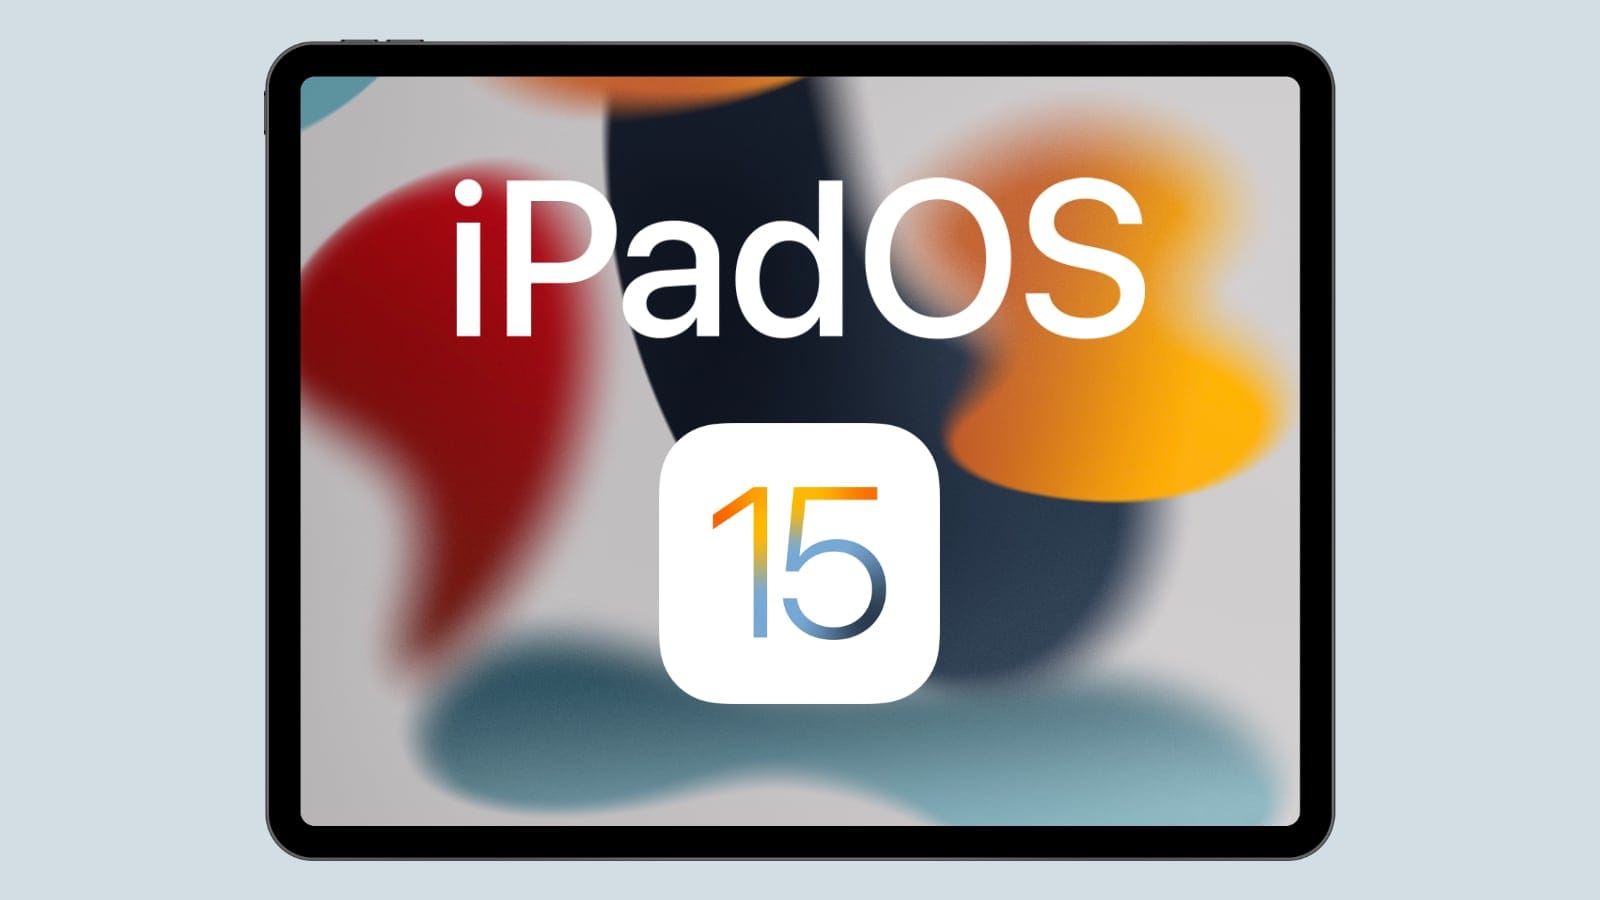 iPadOS 15